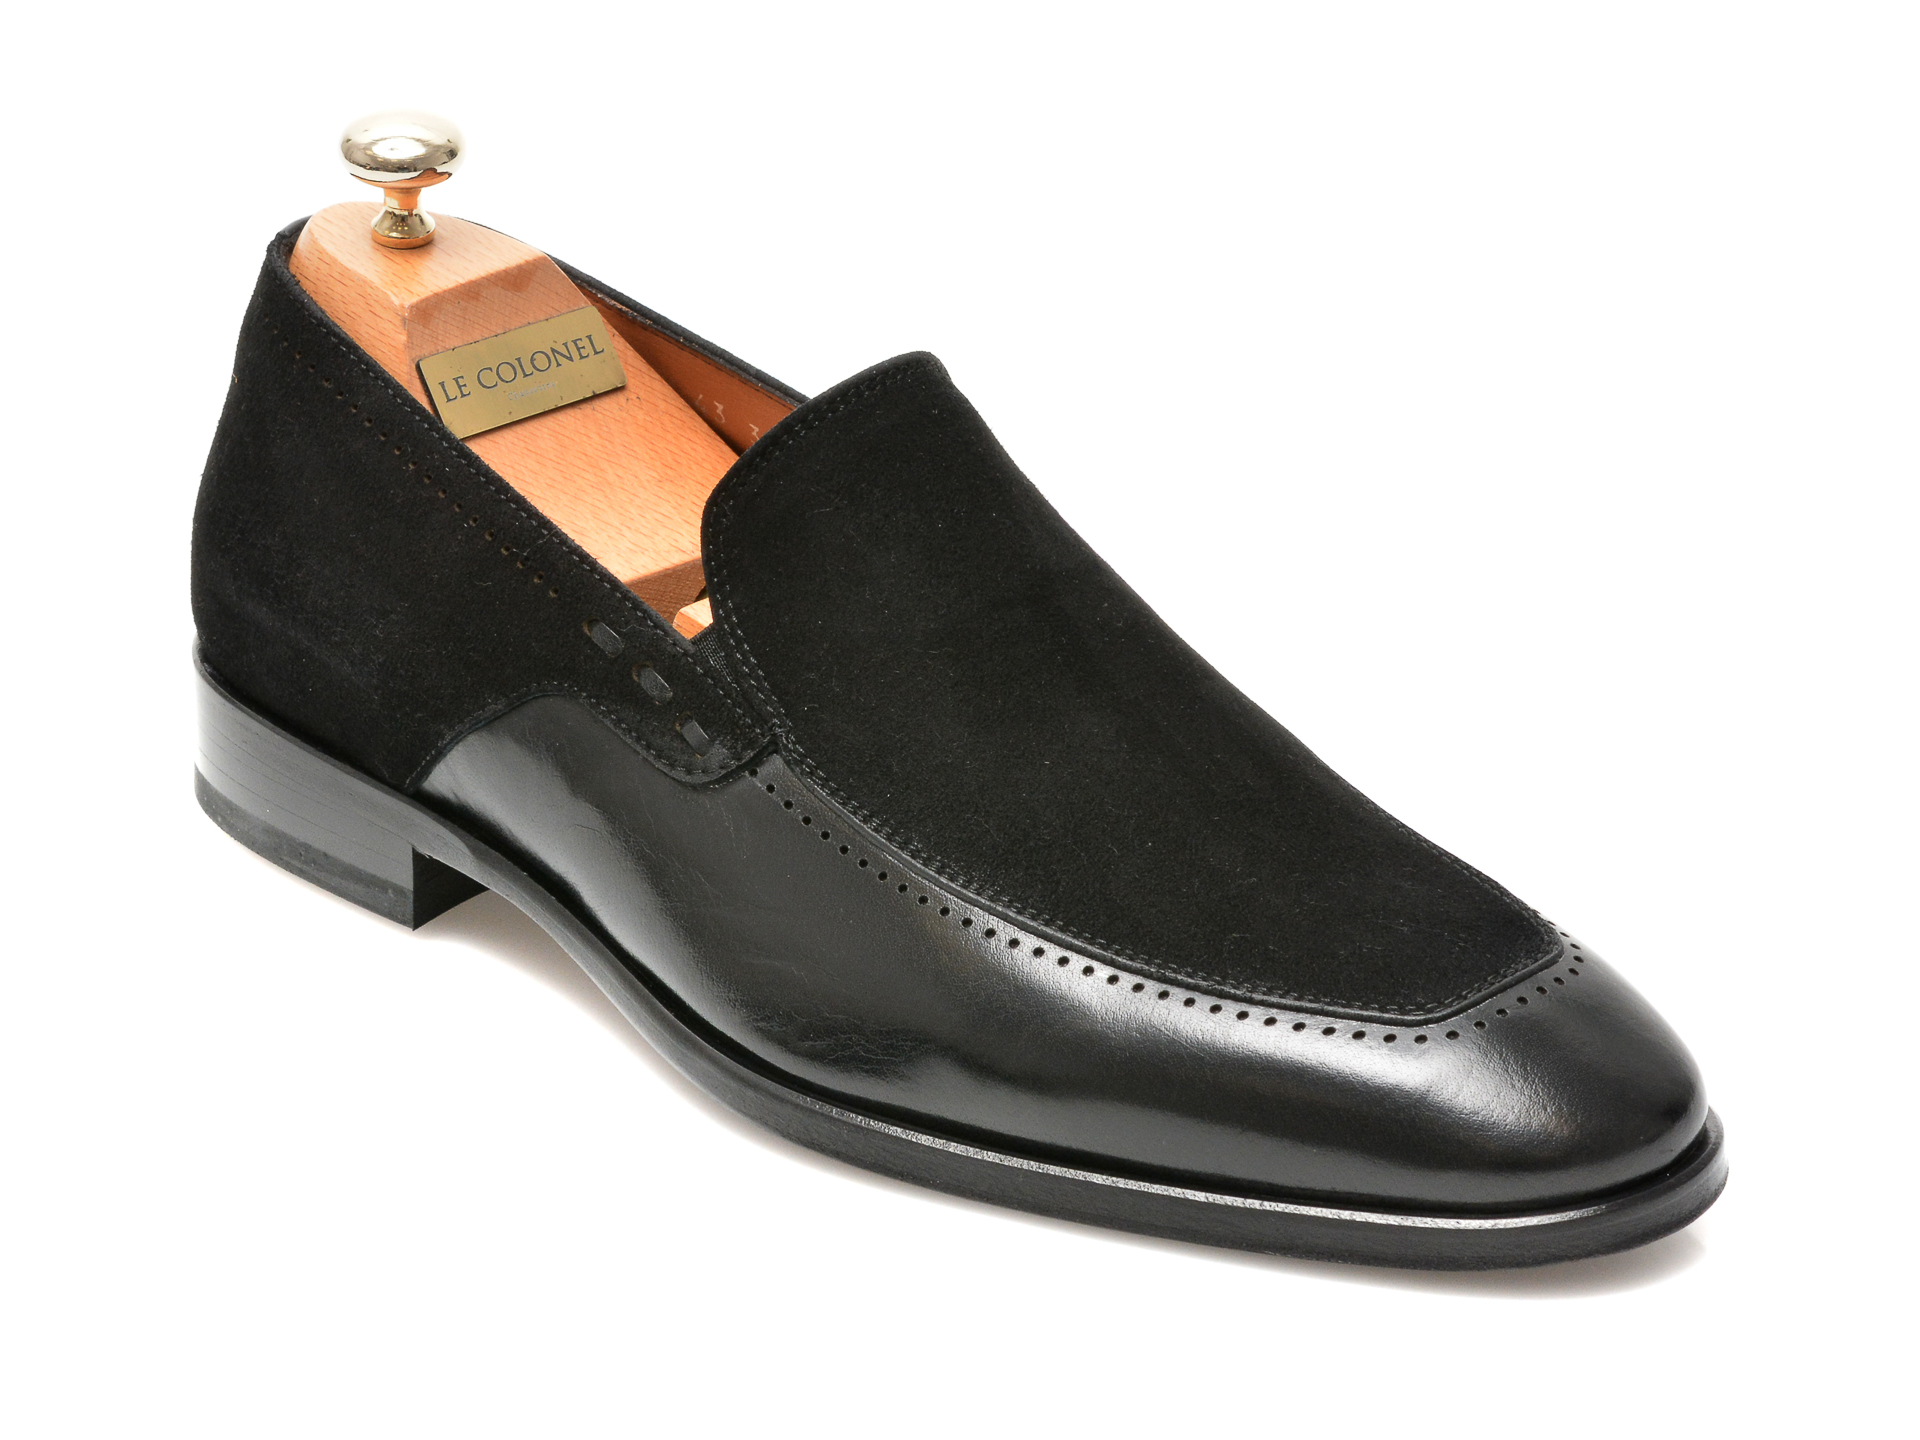 Pantofi LE COLONEL negri, 48702, din piele naturala Le Colonel